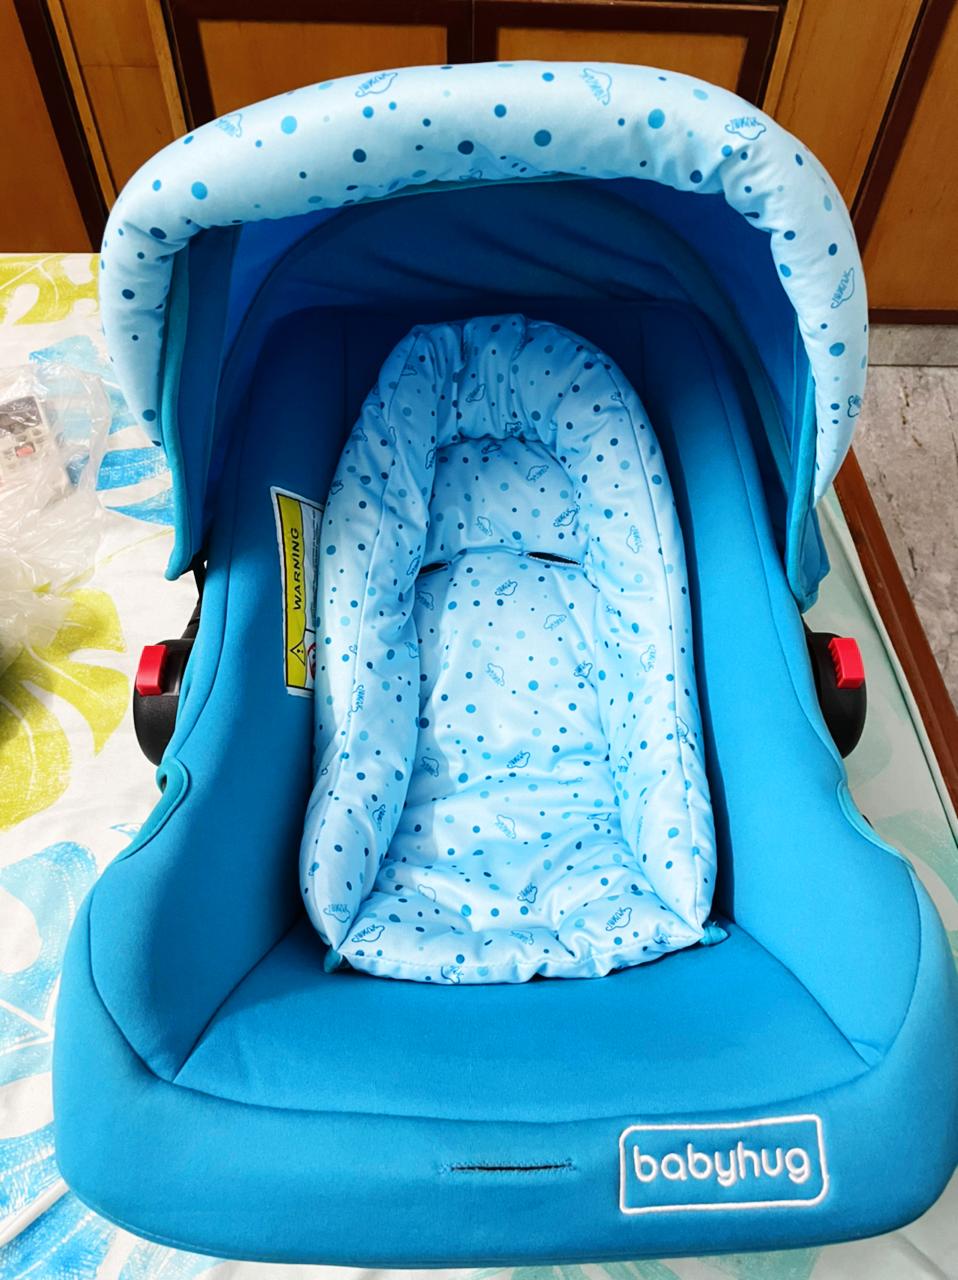 Babyhug Onyx Infant Car Seat